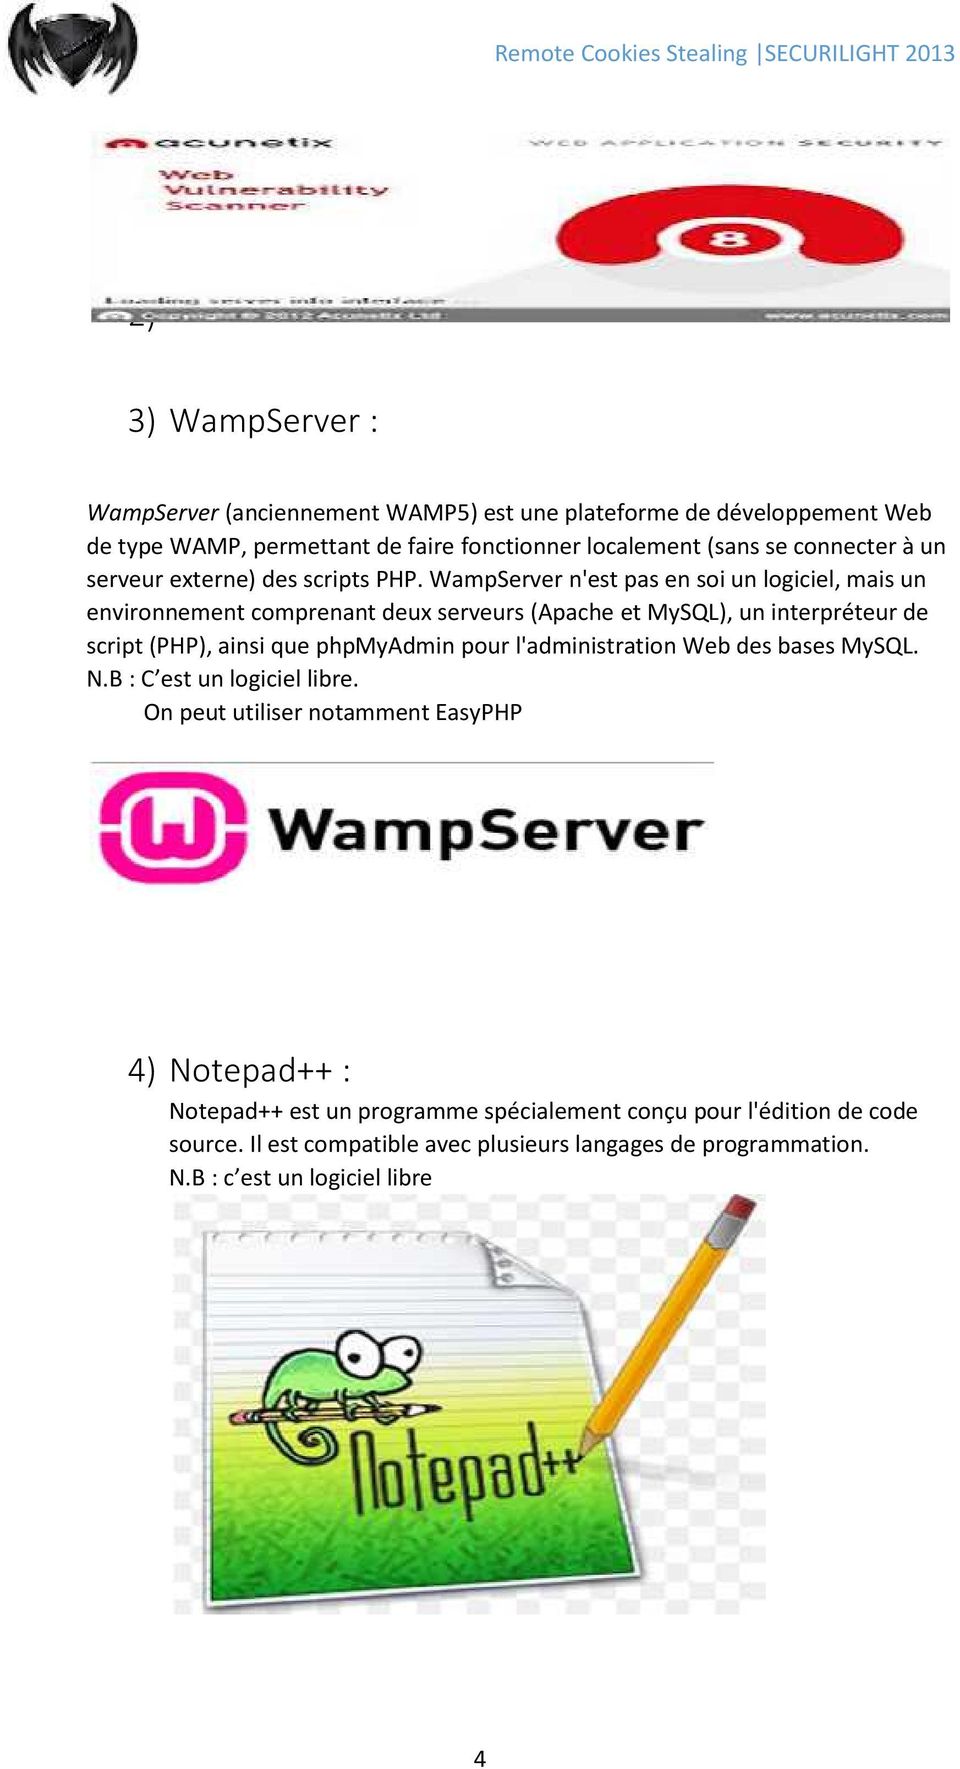 WampServer n'est pas en soi un logiciel, mais un environnement comprenant deux serveurs (Apache et MySQL), un interpréteur de script (PHP), ainsi que phpmyadmin